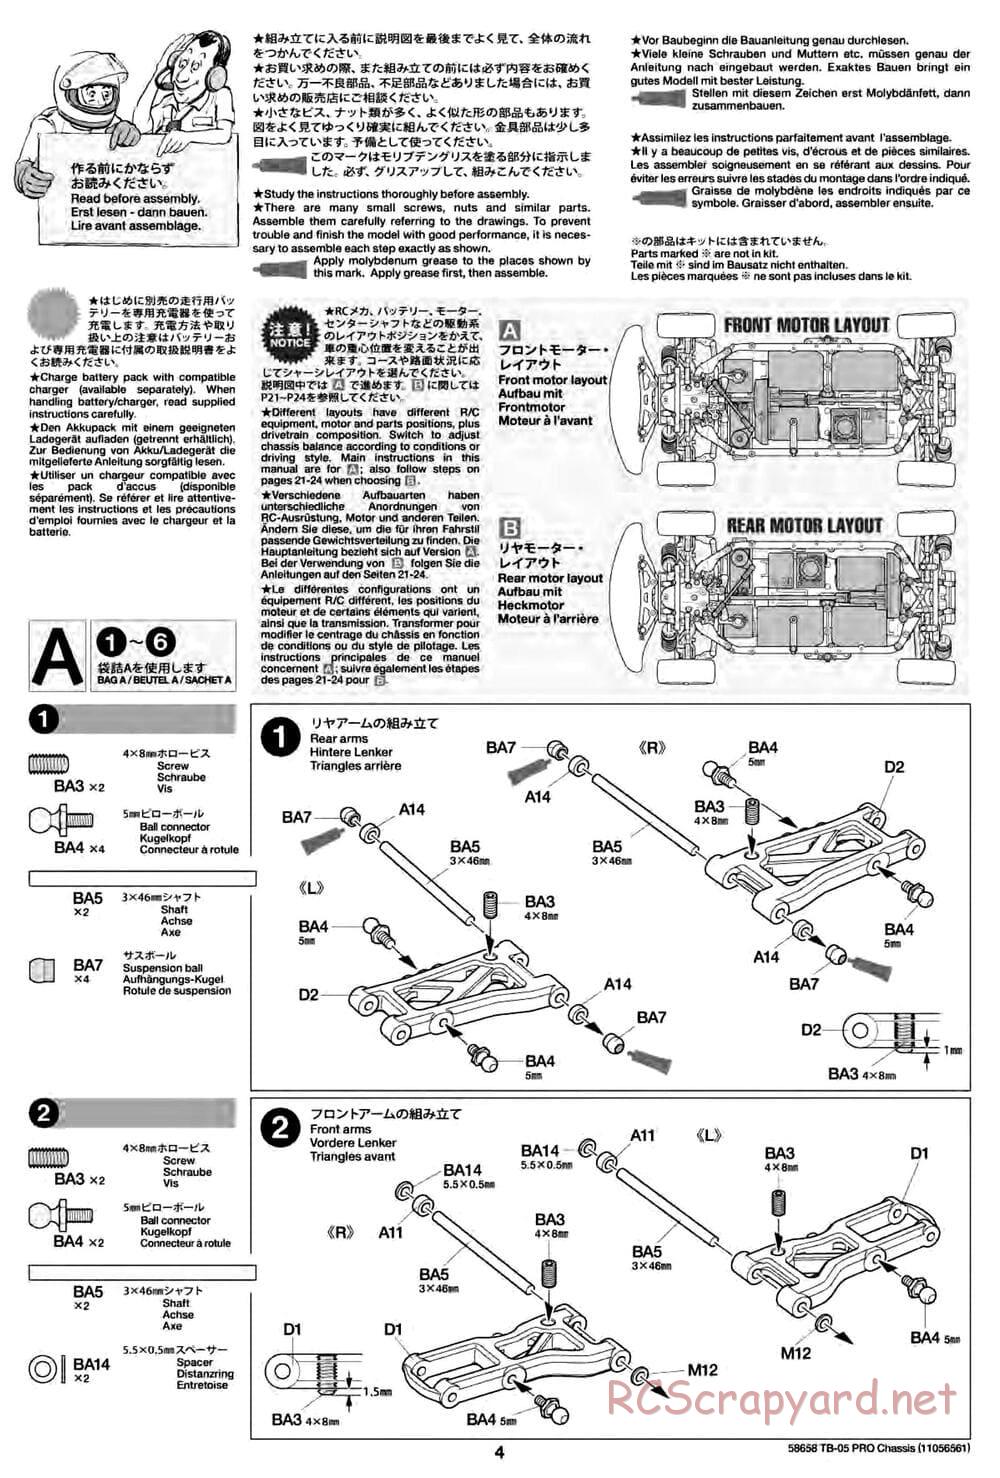 Tamiya - TB-05 Pro Chassis - Manual - Page 4